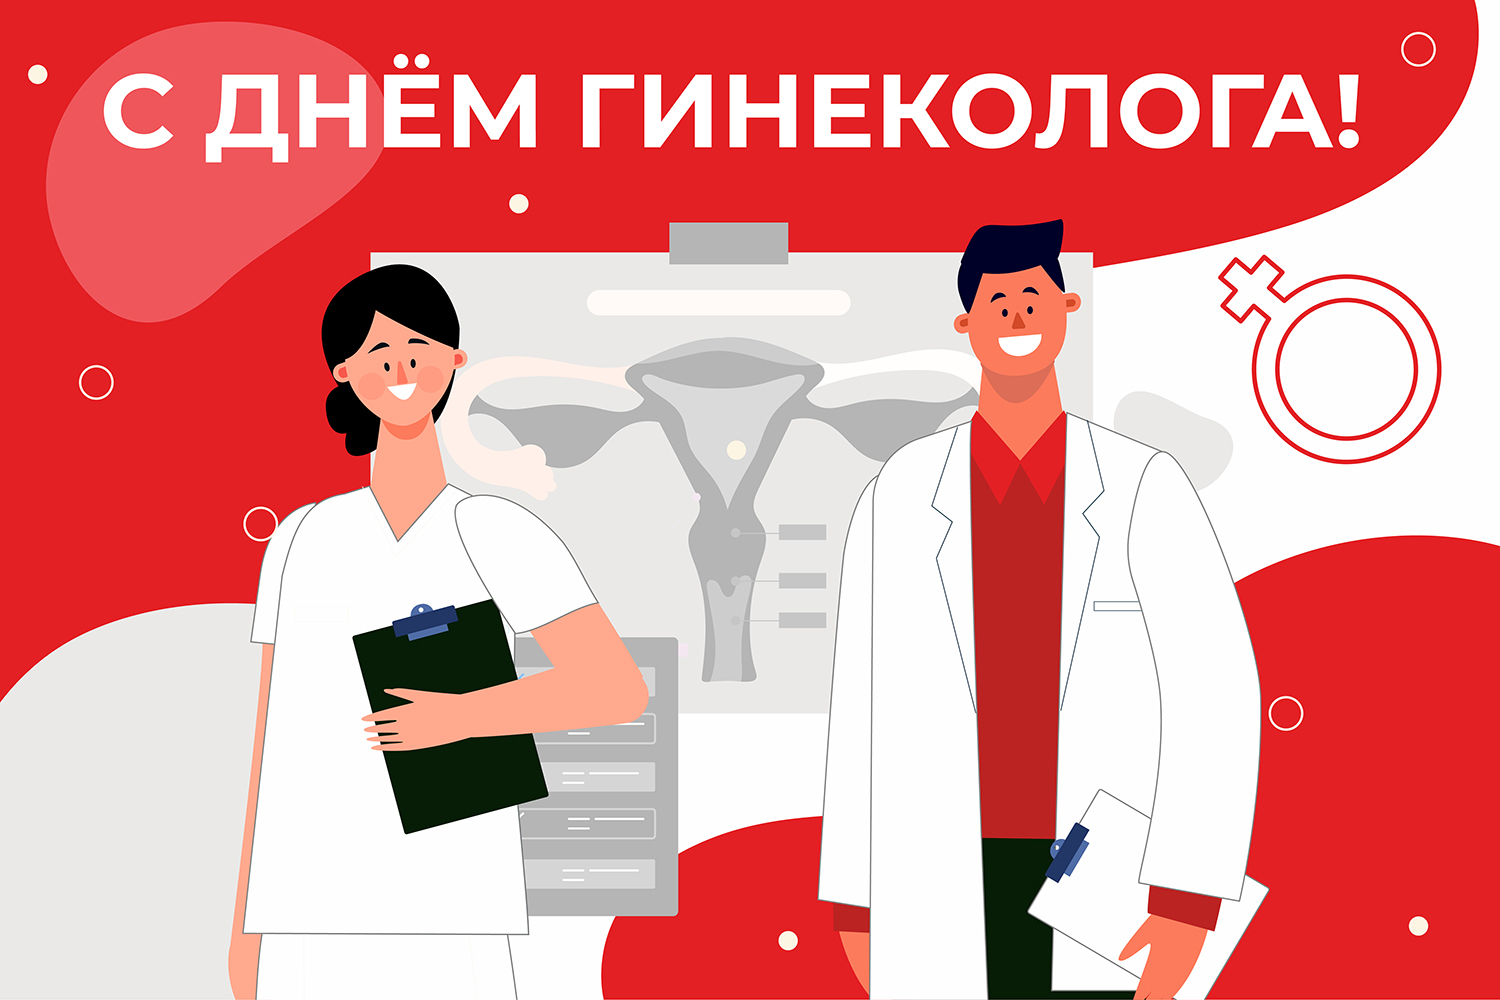 15 июля отмечается Всероссийский день гинеколога